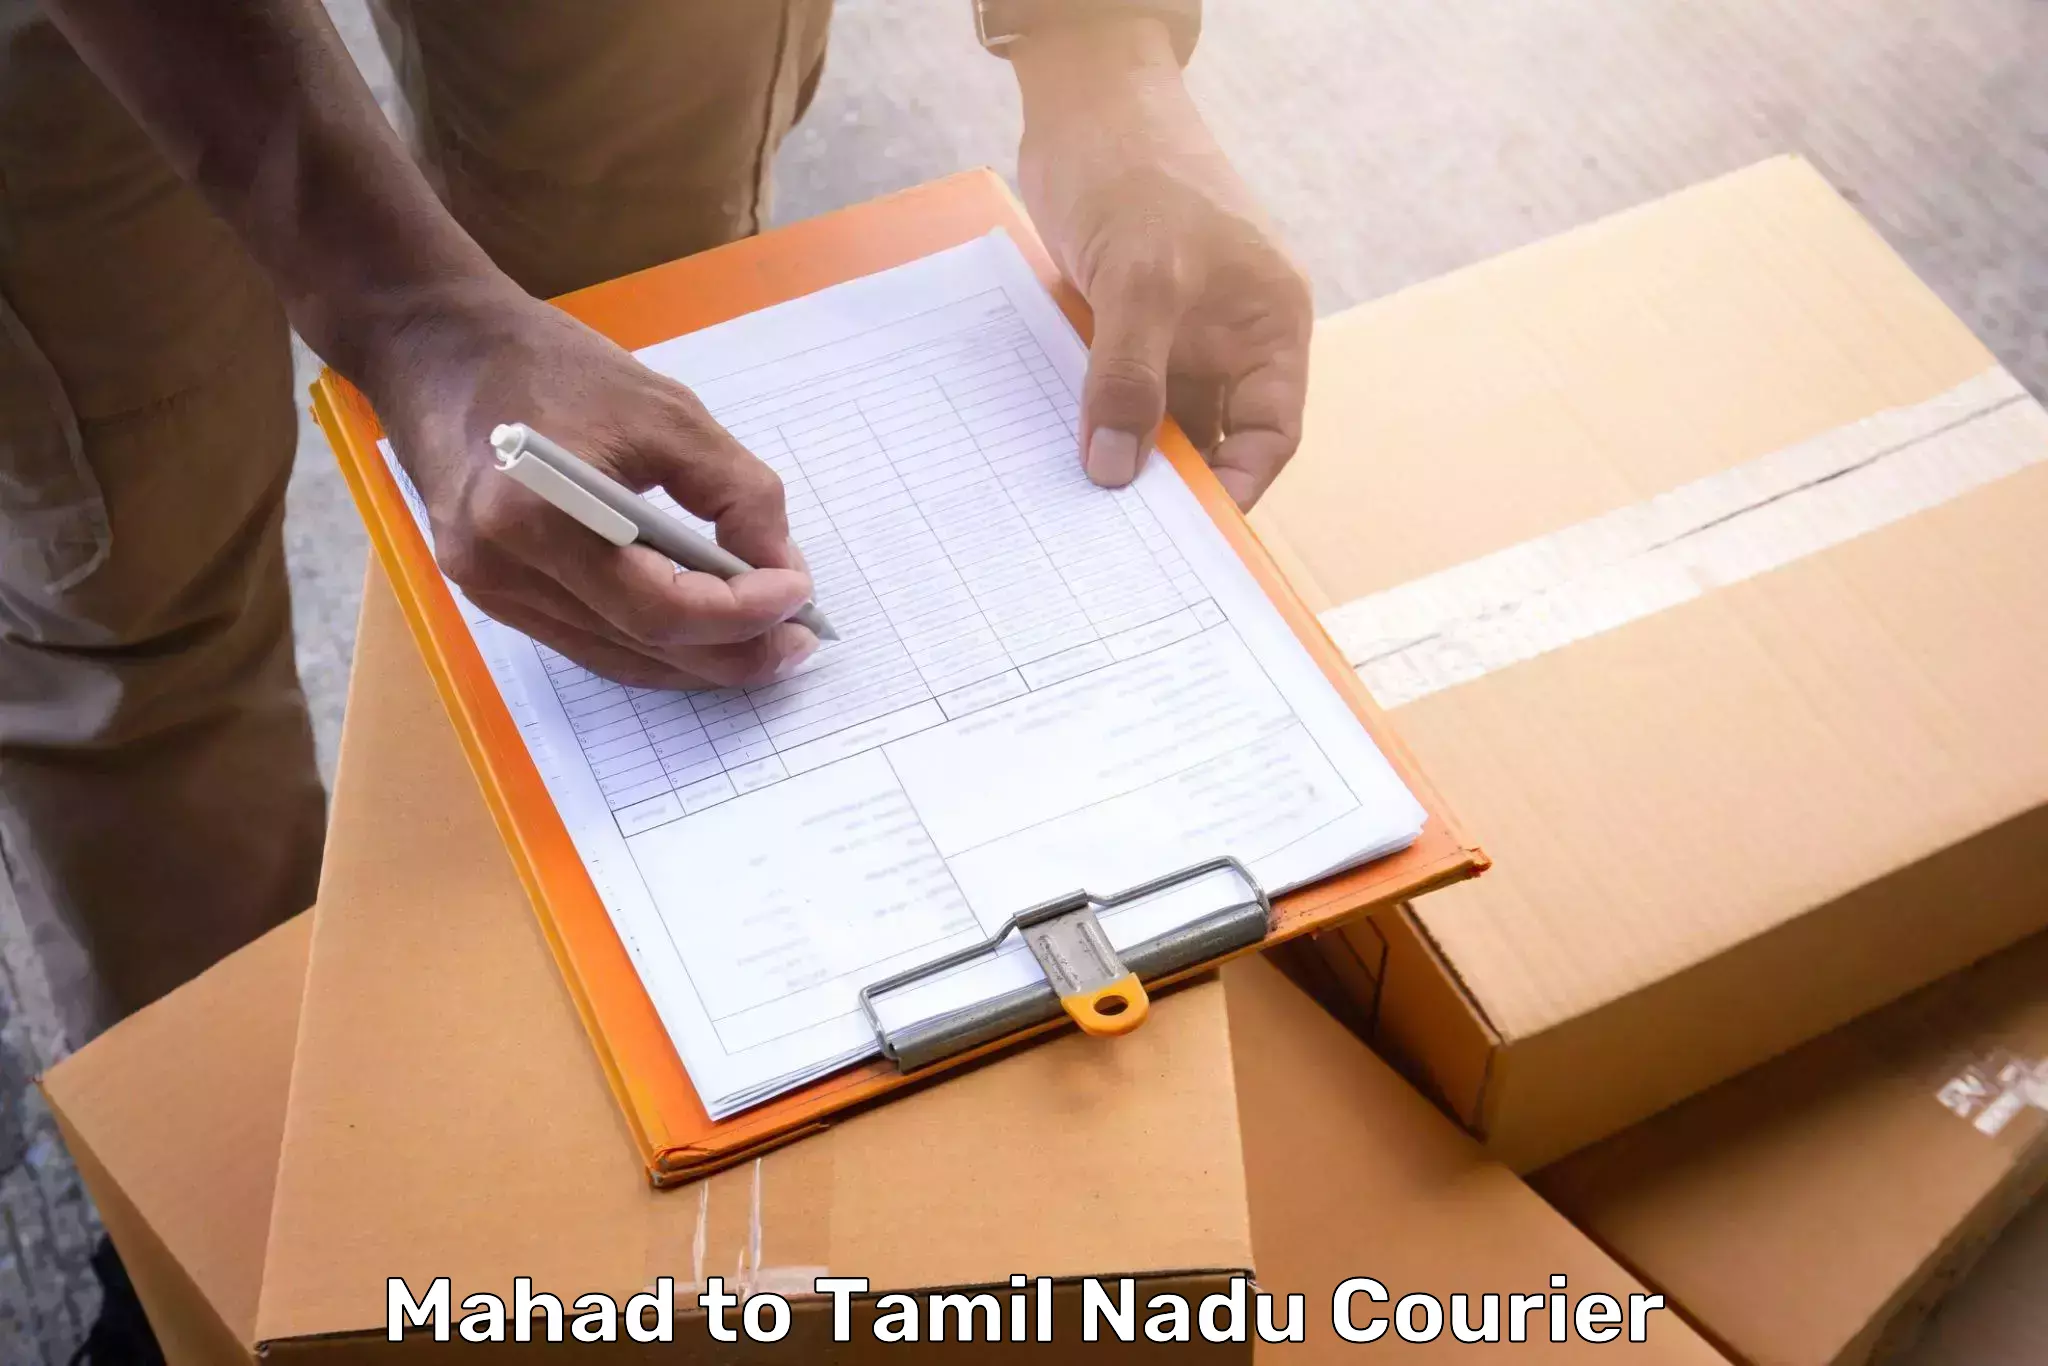 Baggage shipping service Mahad to Tamil Nadu